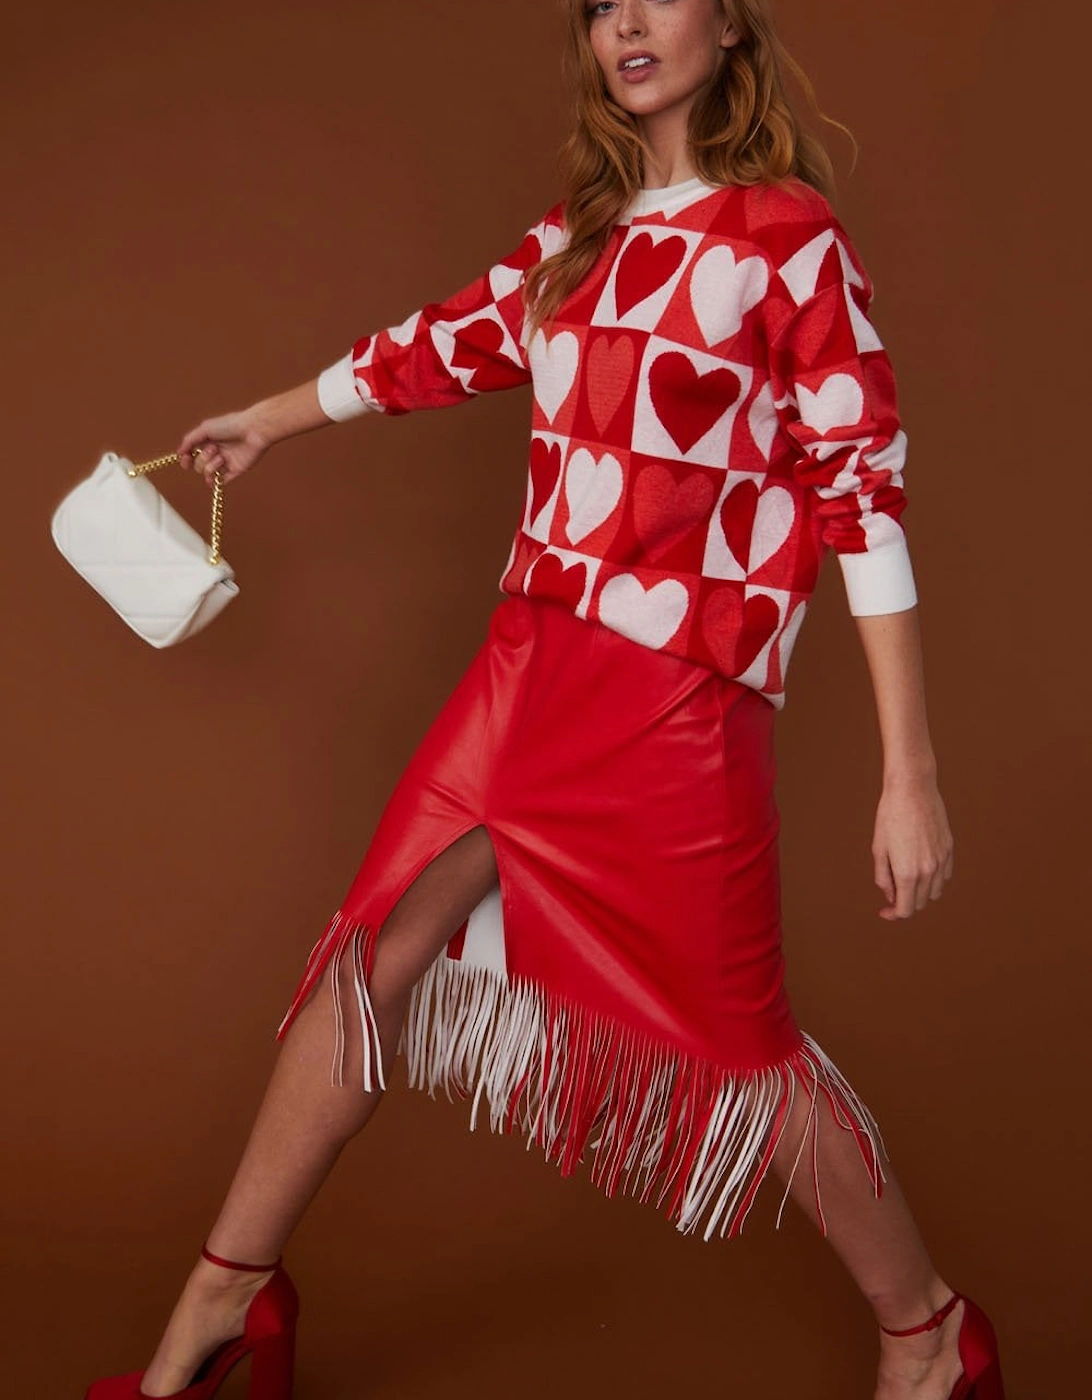 Tassel Midi Skirt with Front Split in Shimmer Red